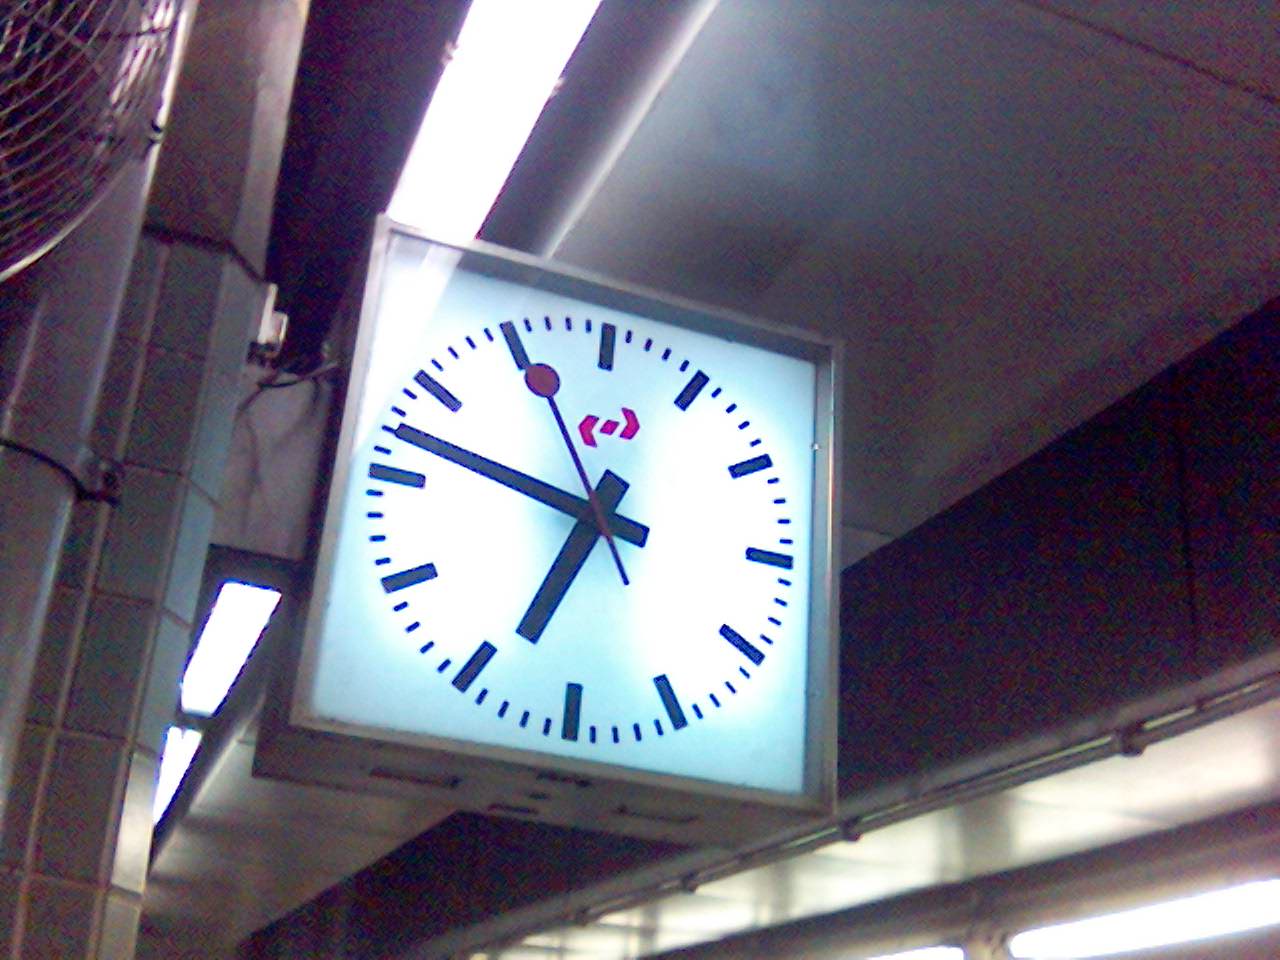 現在火車月台的時鐘也沒有九鐵公司的標誌了